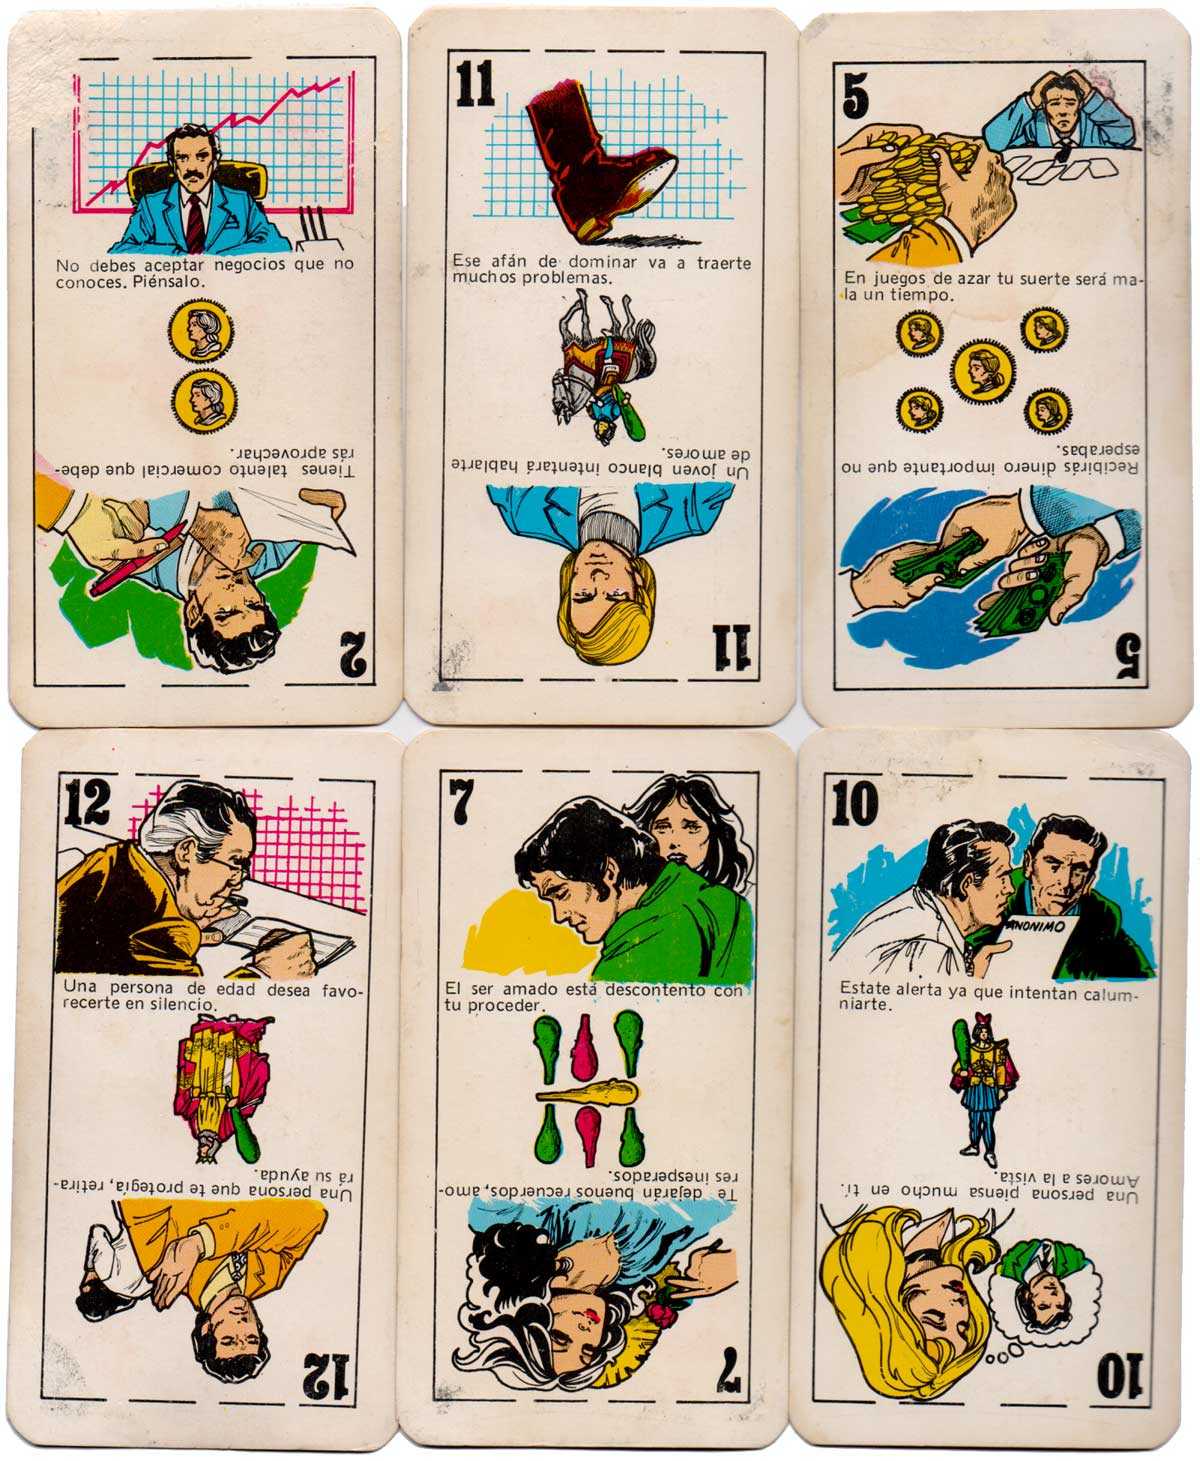 Naipes TU DESTINO Cartomancy Cards by Zandrox Producciones, Miraflores, Peru, c.1975